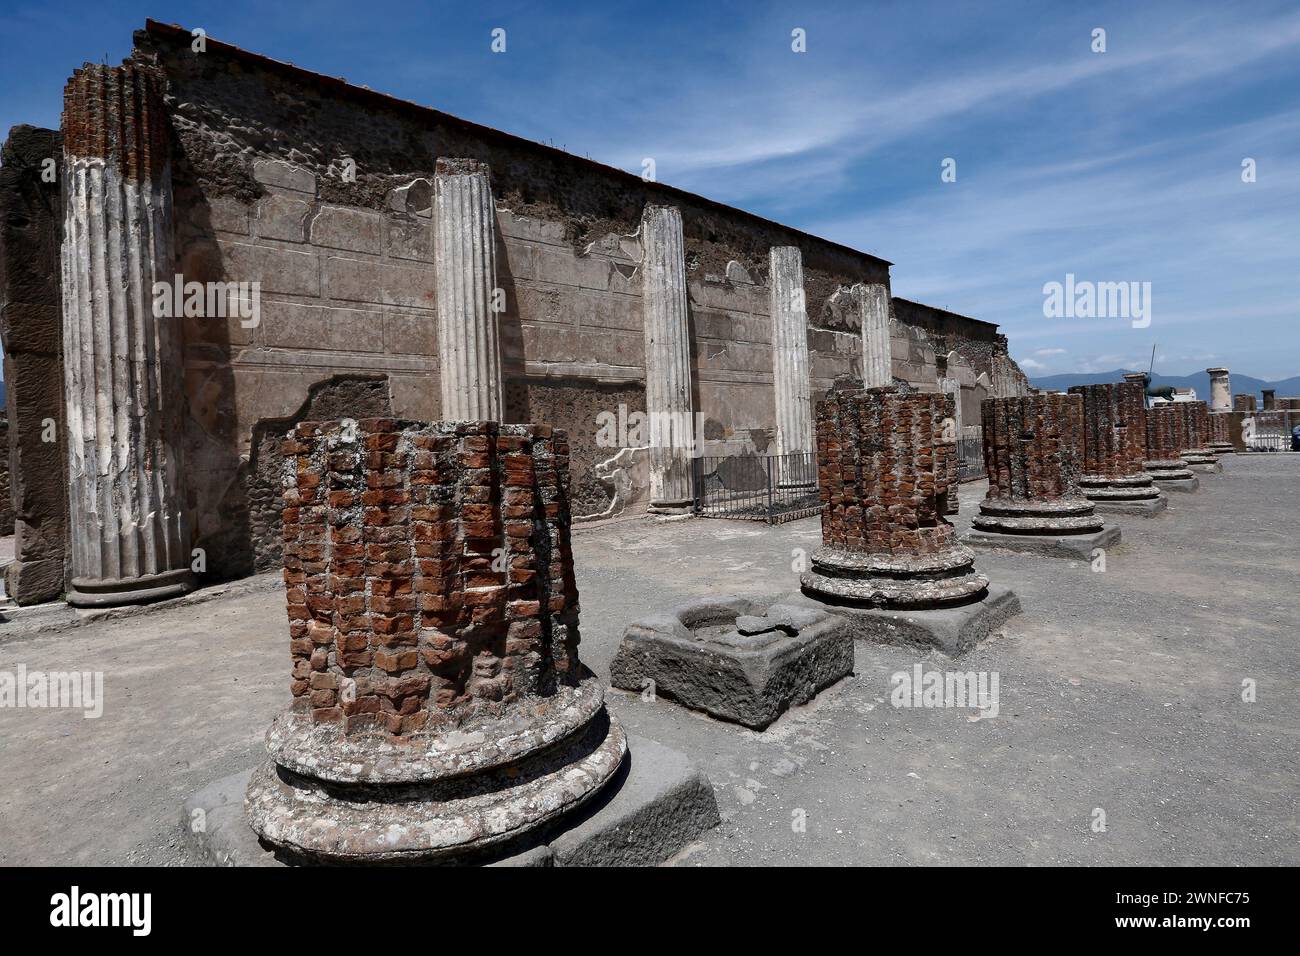 Berühmte antike Ruinen der Stadt Pompeji, Italien. Pompeji wurde nach dem Ausbruch des Vesuvs im Jahre 79 n. Chr. mit Asche und Bimsstein begraben. Stockfoto